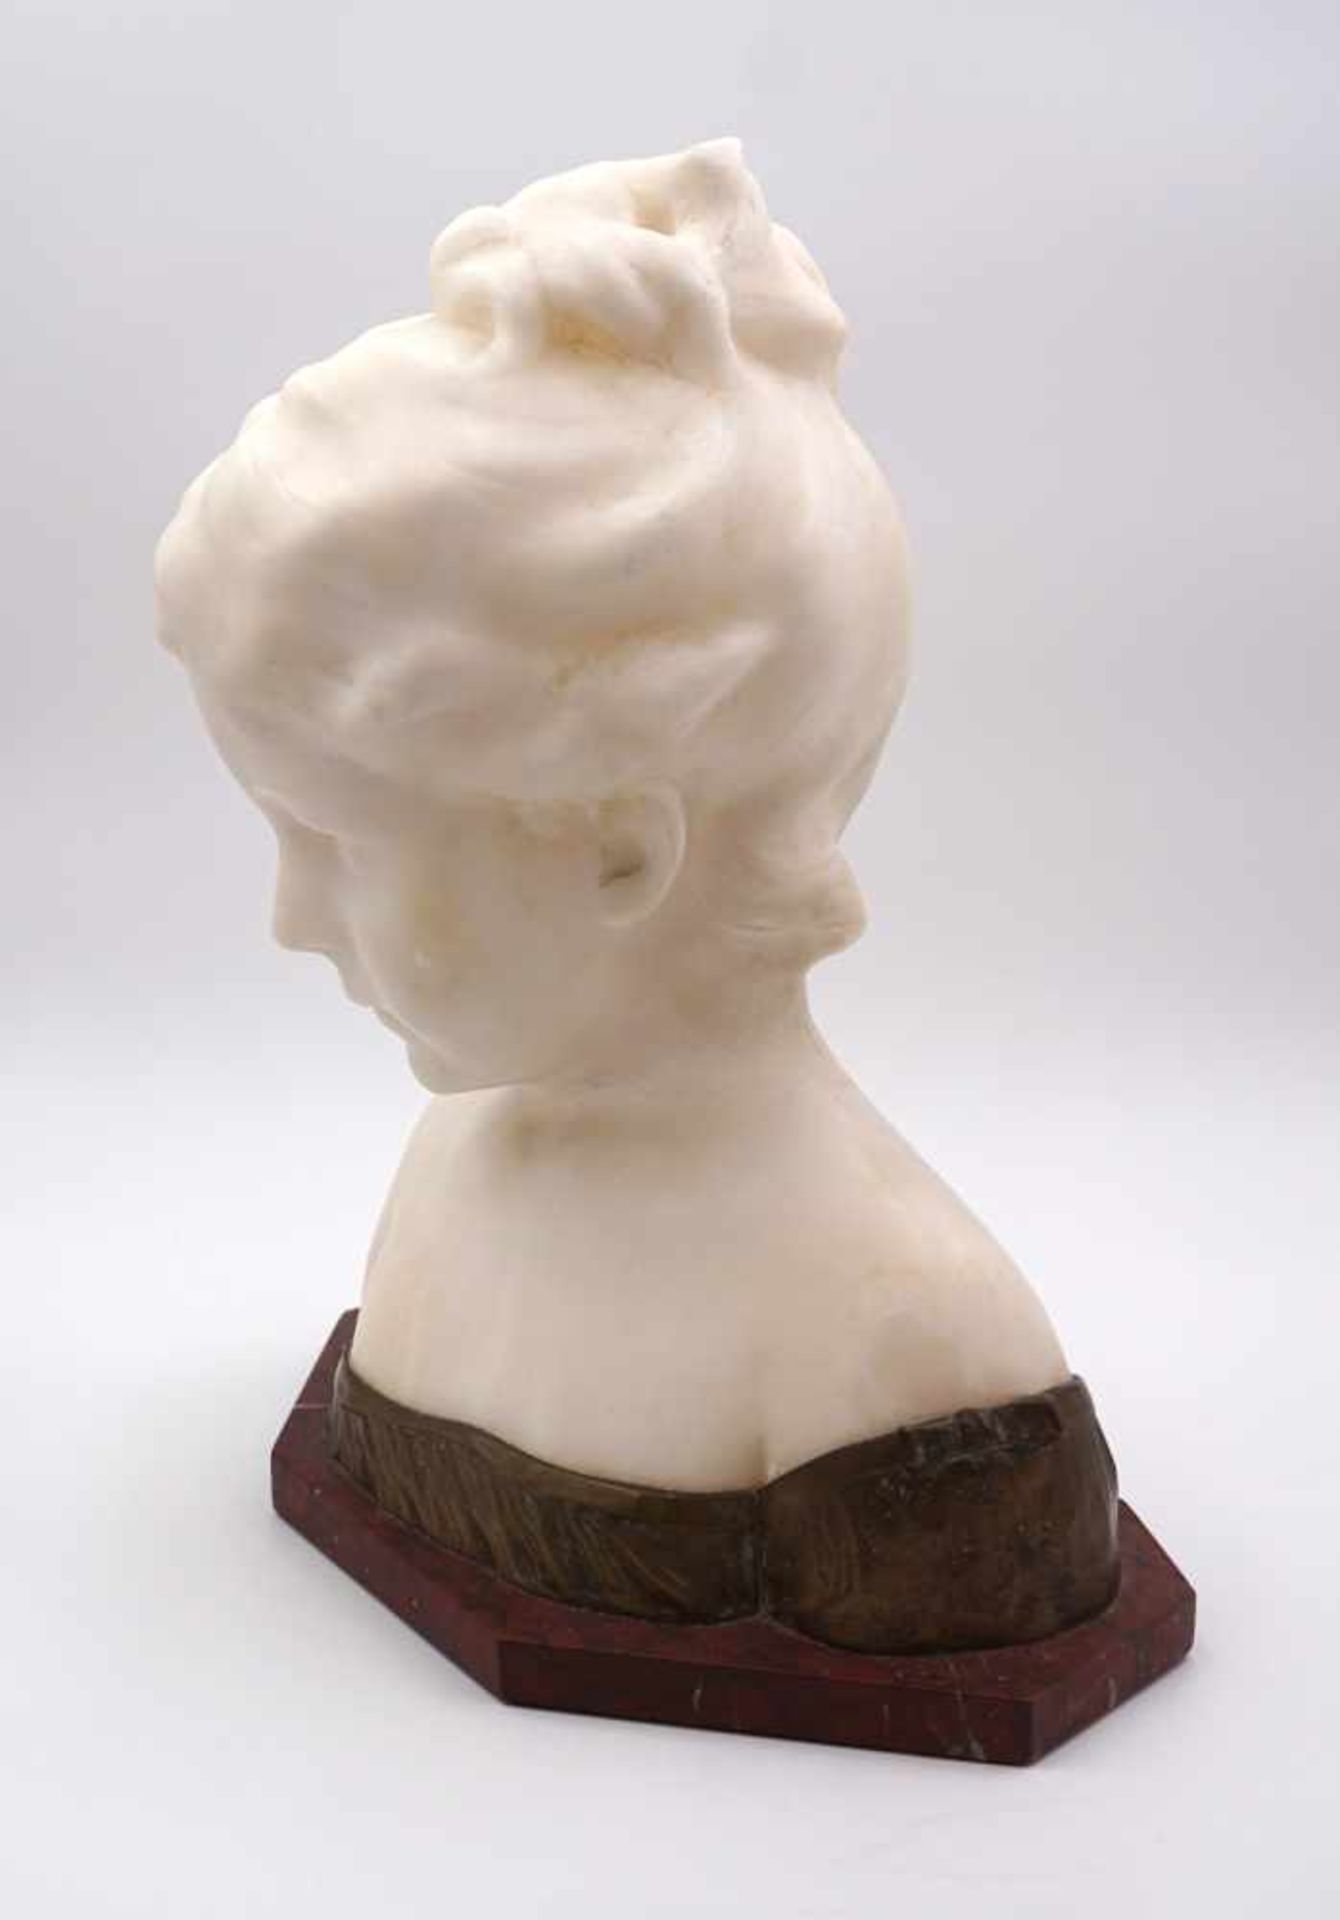 1 Skulptur wohl Alabaster "Mädchenbüste" wohl um 1900, signiert GINO - Bild 3 aus 3